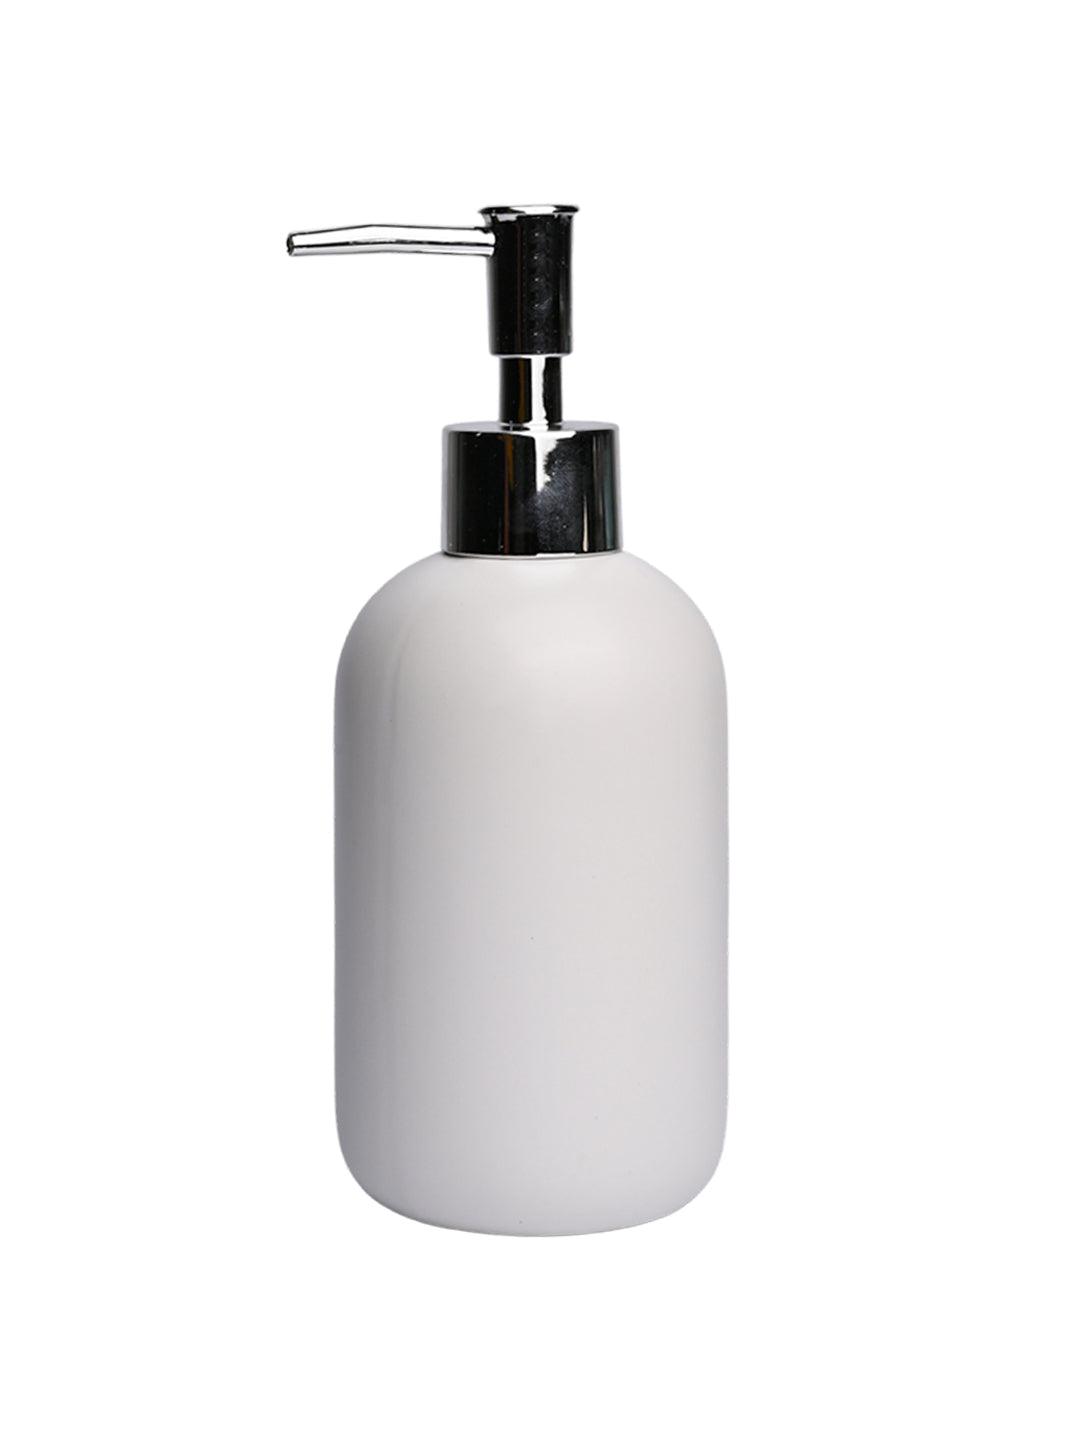 White Soap Dispenser - MARKET99